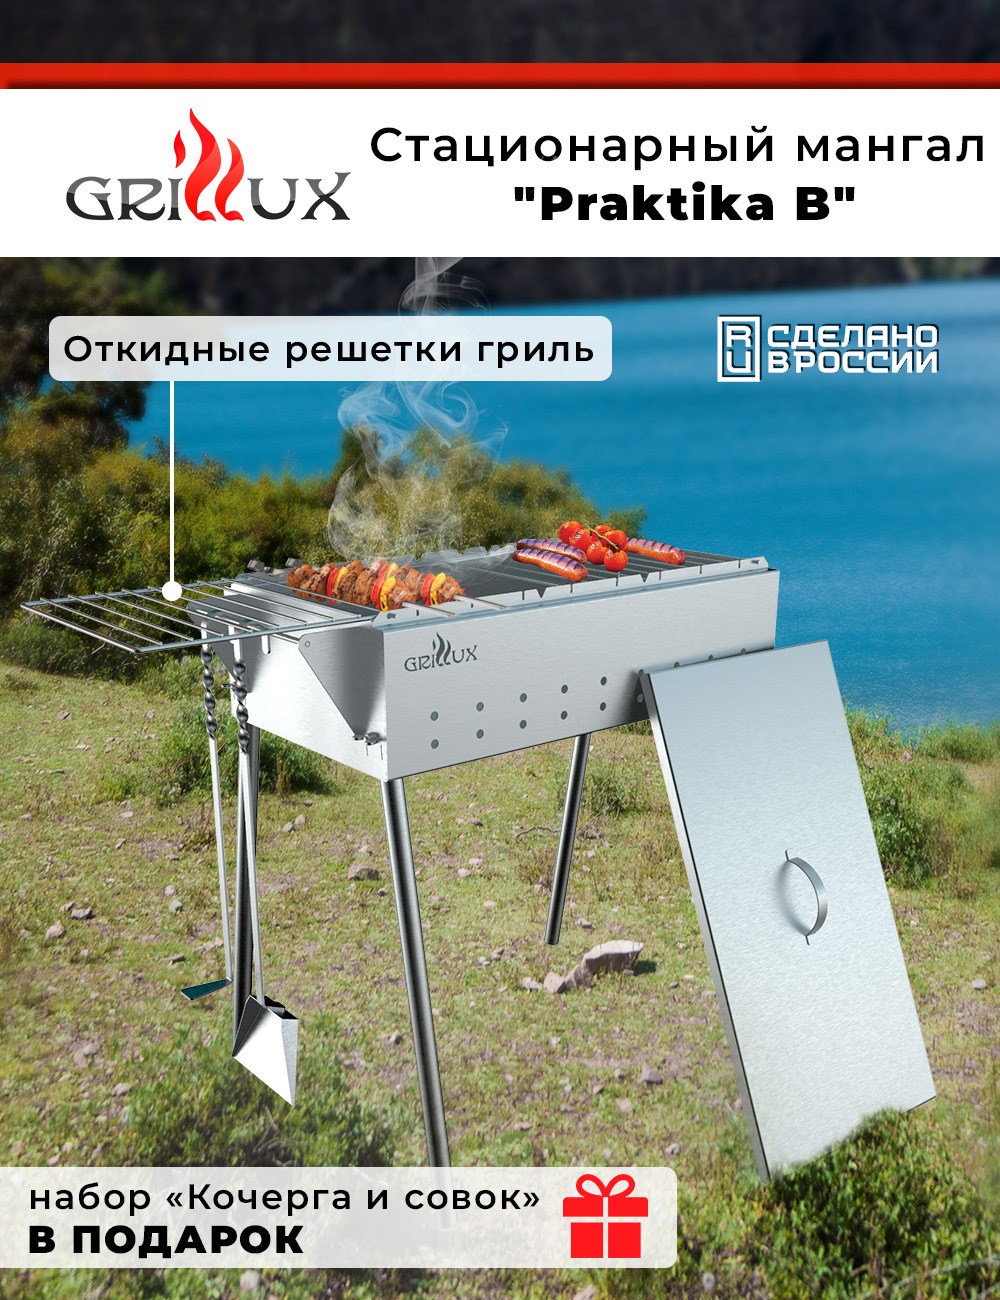  Grillux ВЗР1255Б Praktika B 610х340 см сталь в Санкт-Петербурге .